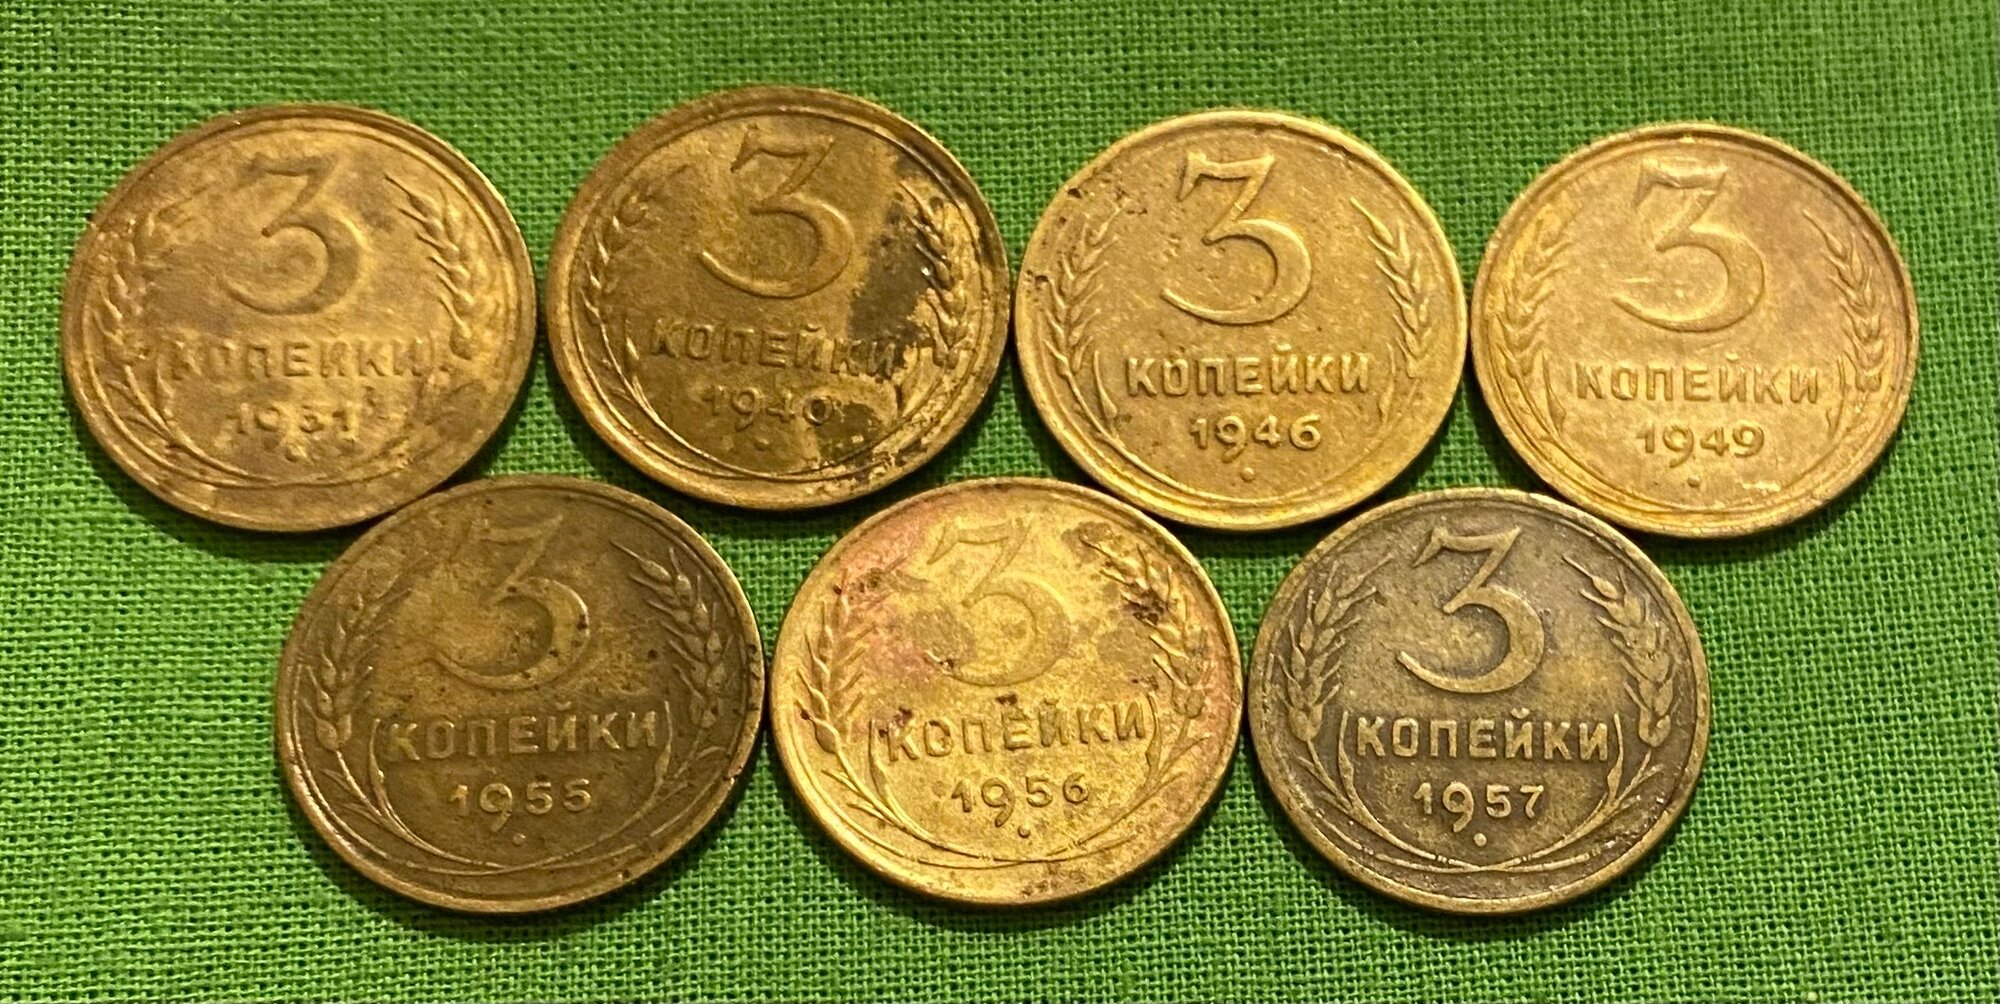 Набор монет СССР 3 копейки 1931,1940,1946,1949,1955,1956,1957 гг, оборотные, оригинал